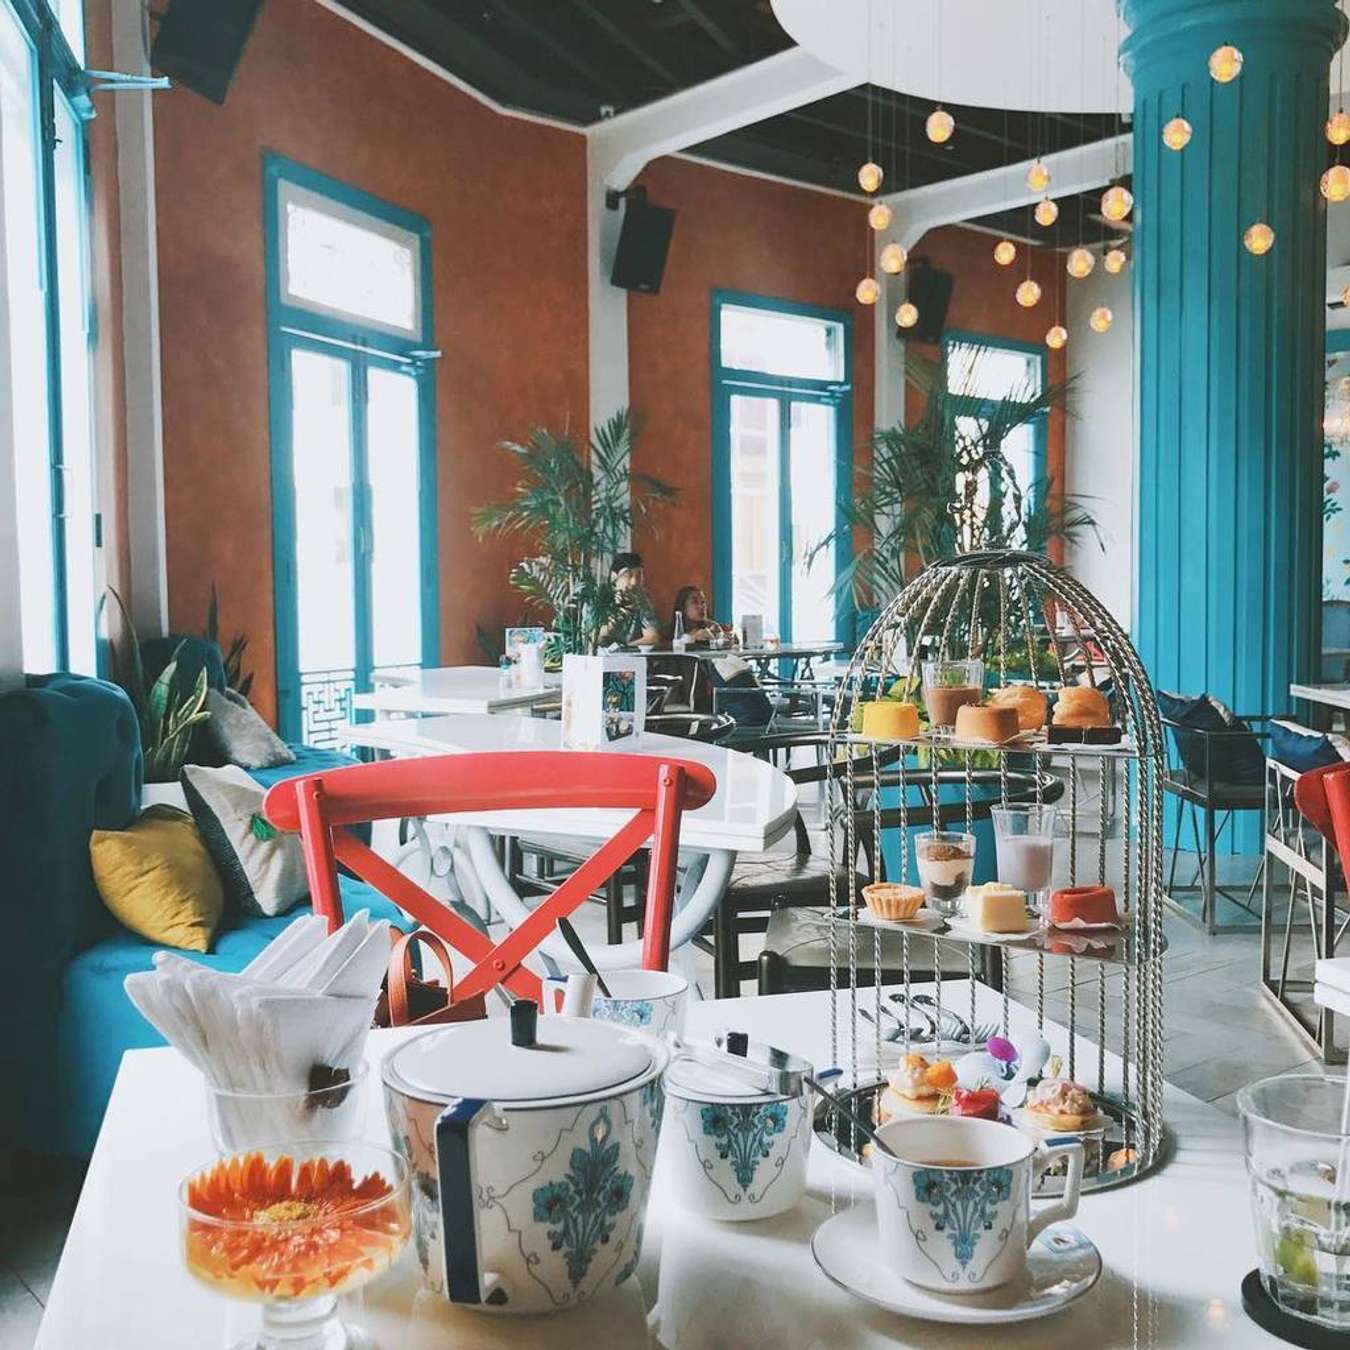 9 quán cà phê đẹp ở Sài Gòn đang là địa điểm sống ảo hot nhất hiện nay